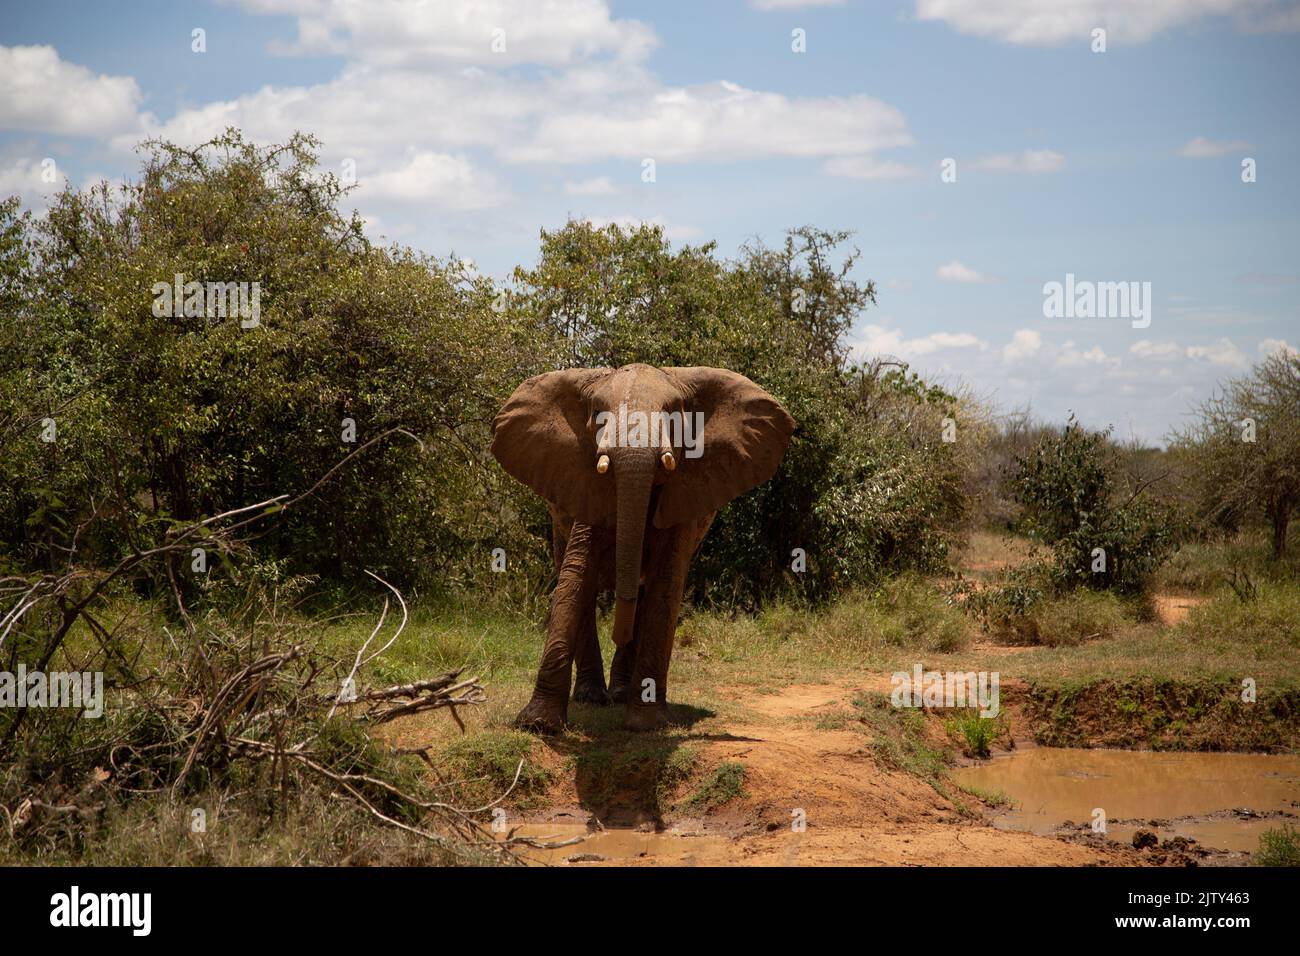 Young Elephant affronte le photographe dans un écran agressif Banque D'Images